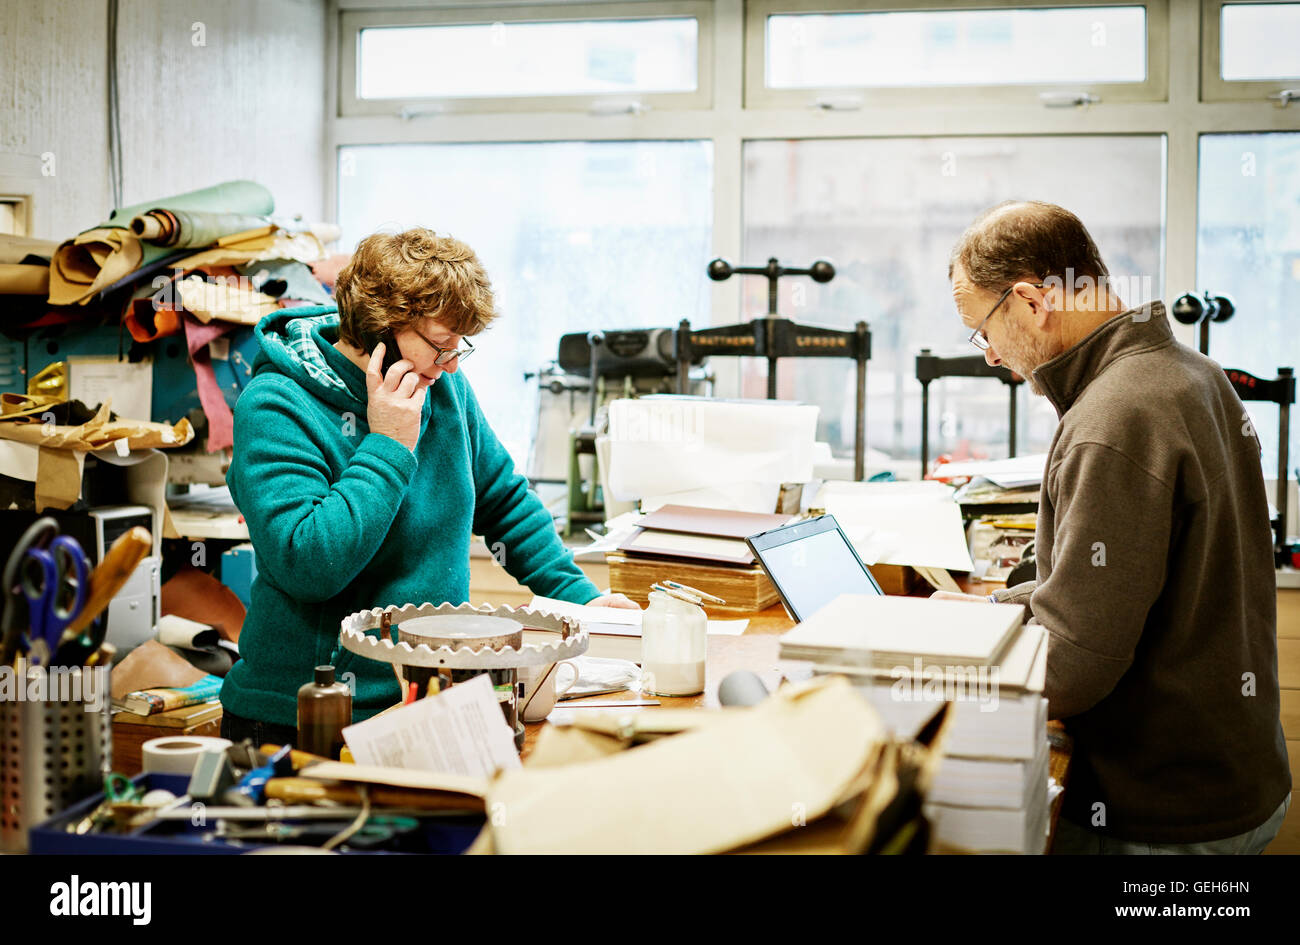 Une femme de prendre un appel téléphonique et d'un homme travaillant sur un ordinateur portable dans un atelier de reliure. Banque D'Images